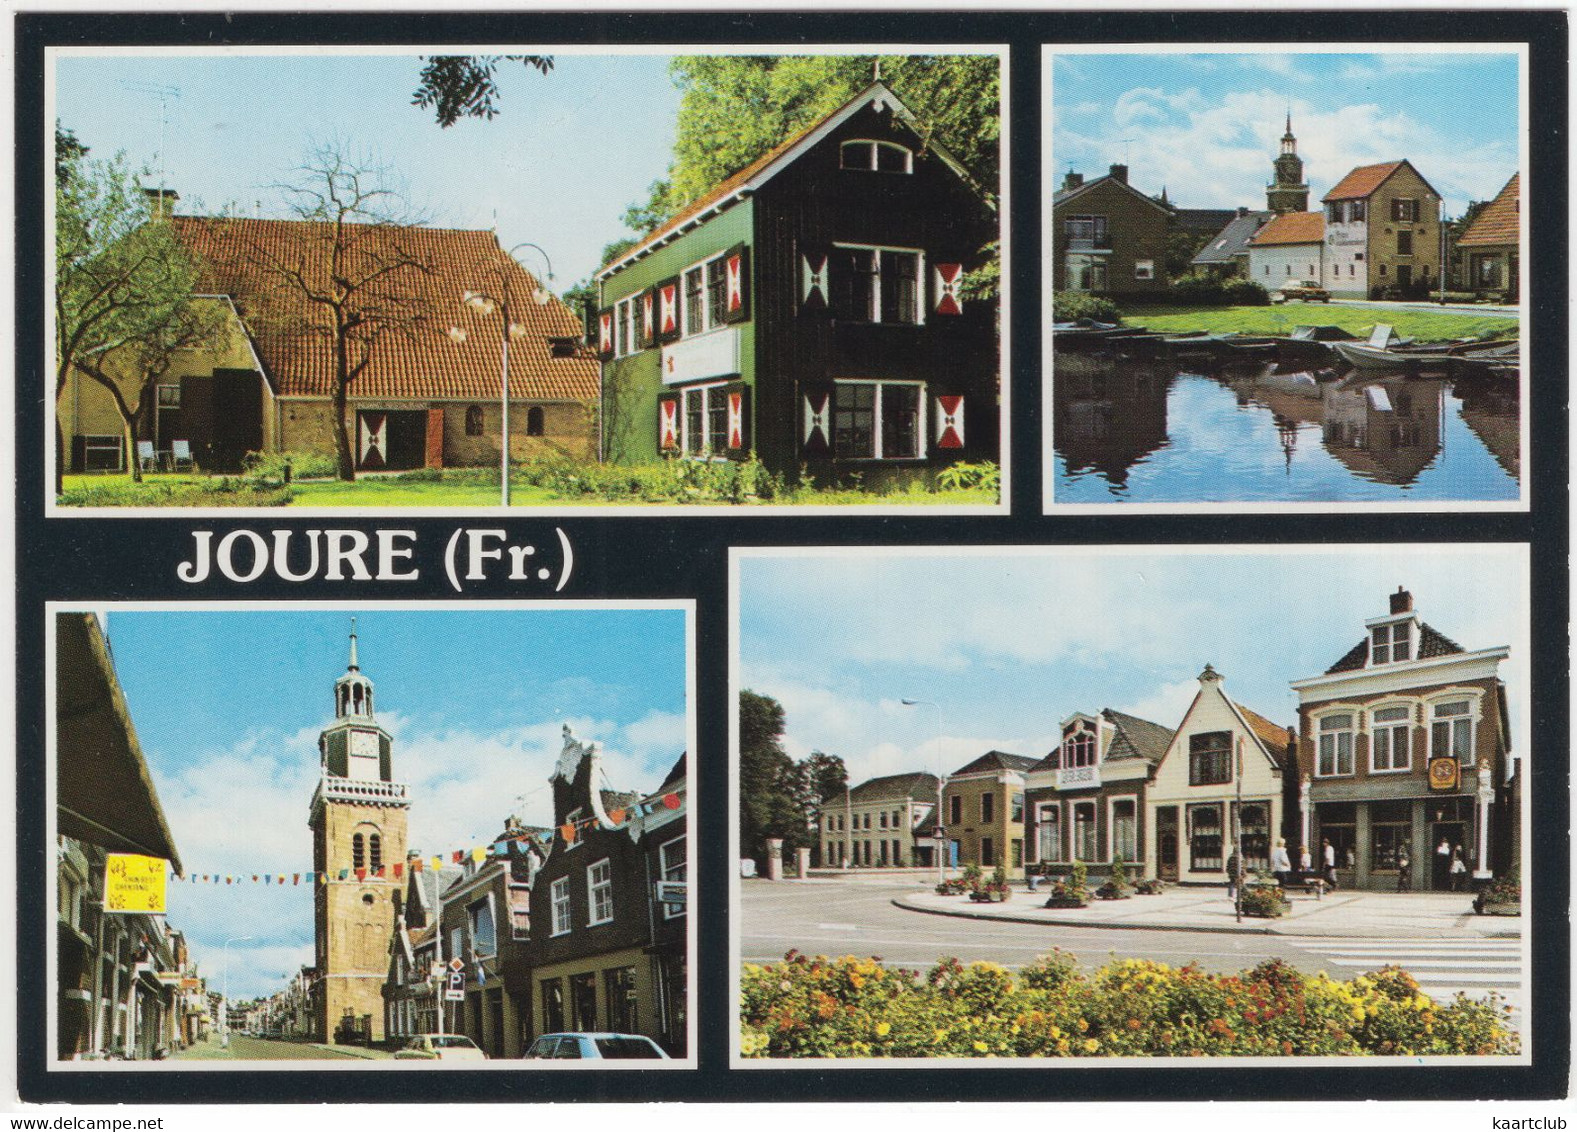 Joure - (Friesland, Nederland / Holland) -  Nr. L 7301 - Joure